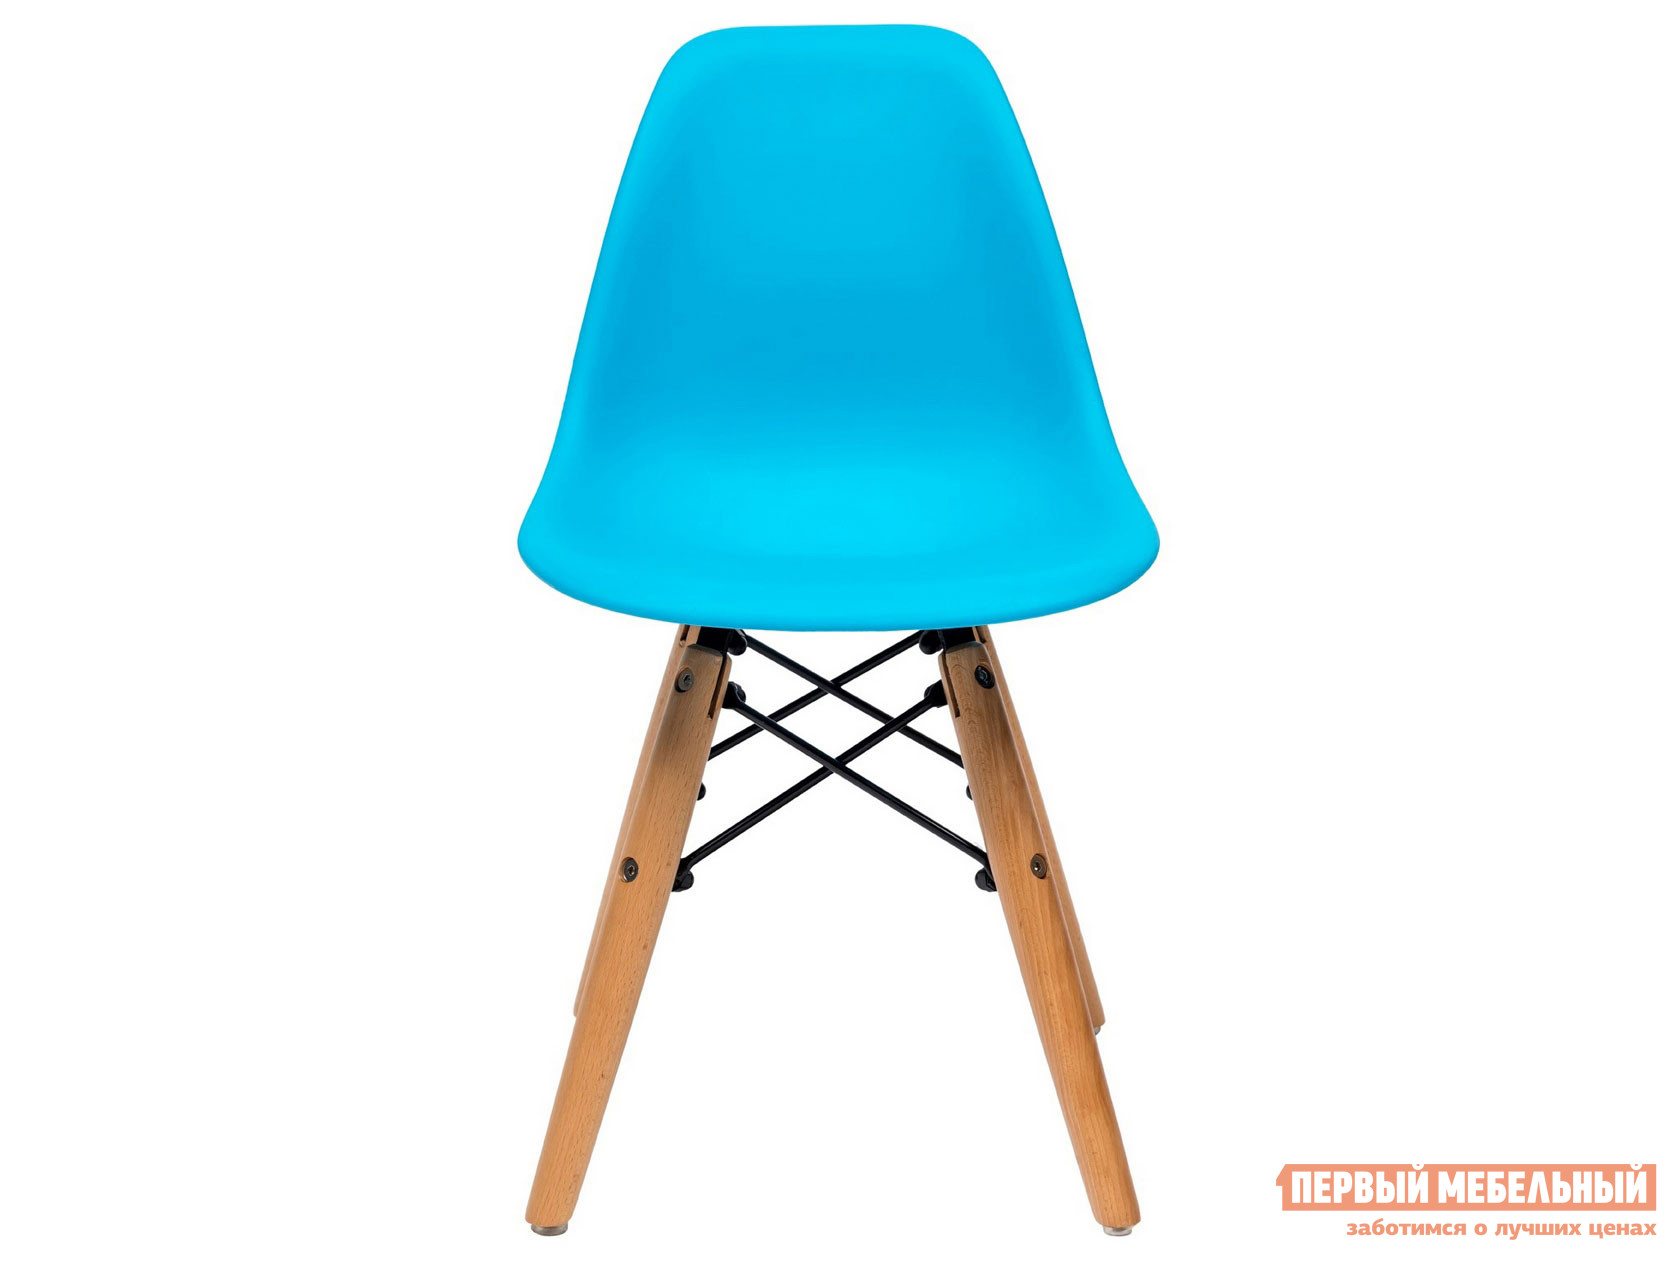 Столик и стульчик  Имс 8056 Голубой от Первый Мебельный